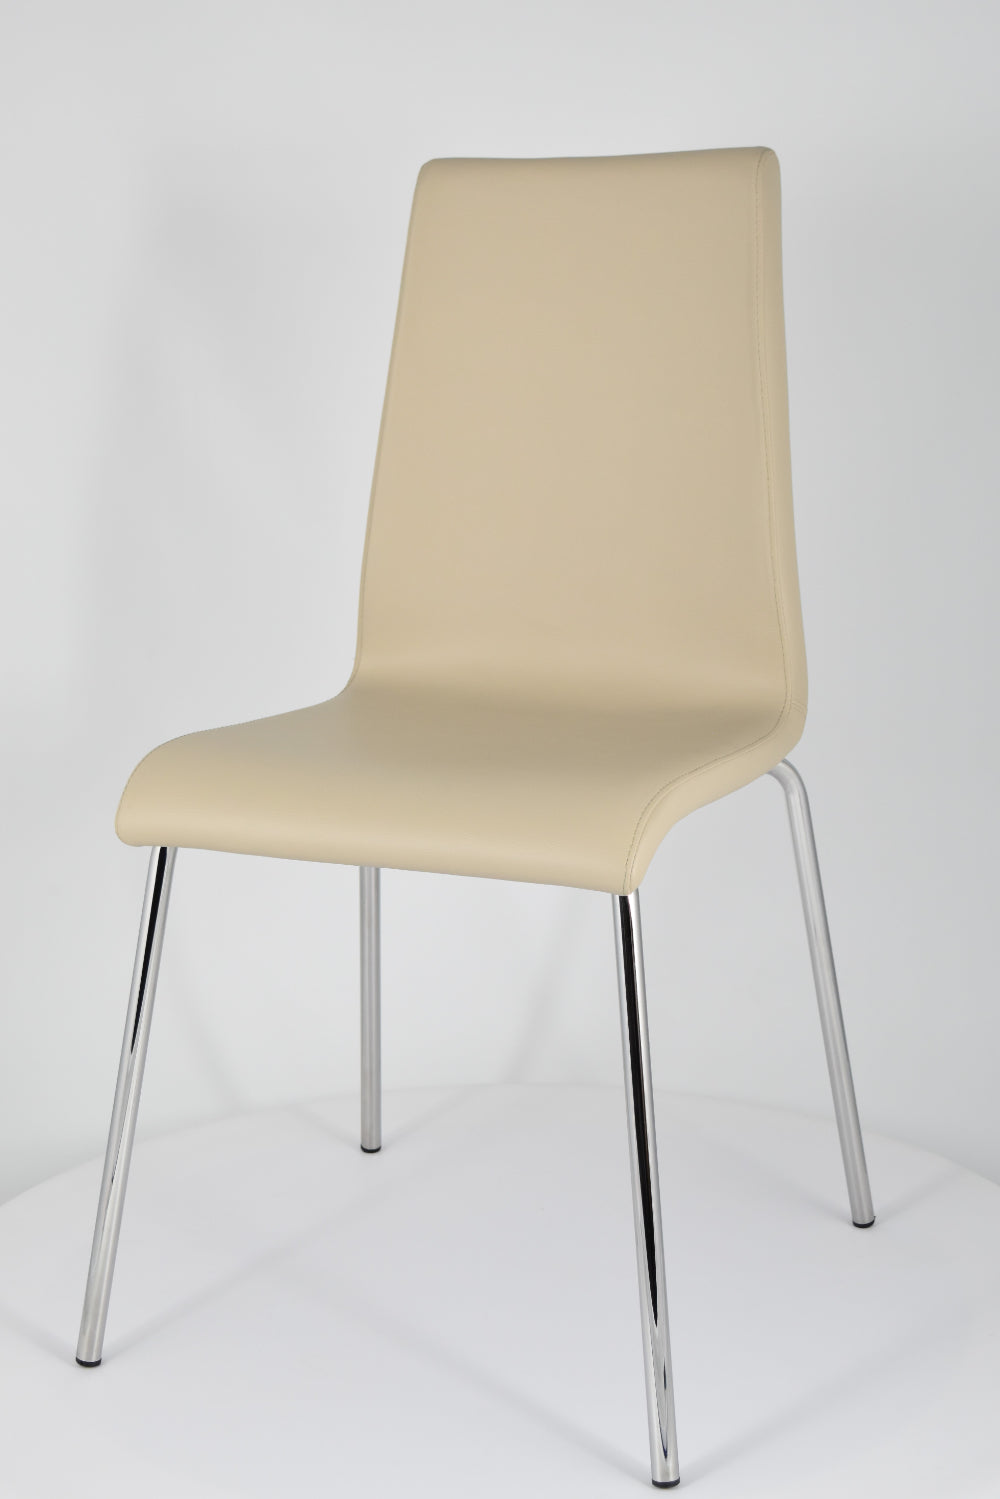 Tommychairs - Set 2 sillas Madrid con Patas de Acero Cromado y Asiento en Madera Multicapa, tapizado en Polipiel Color Lino